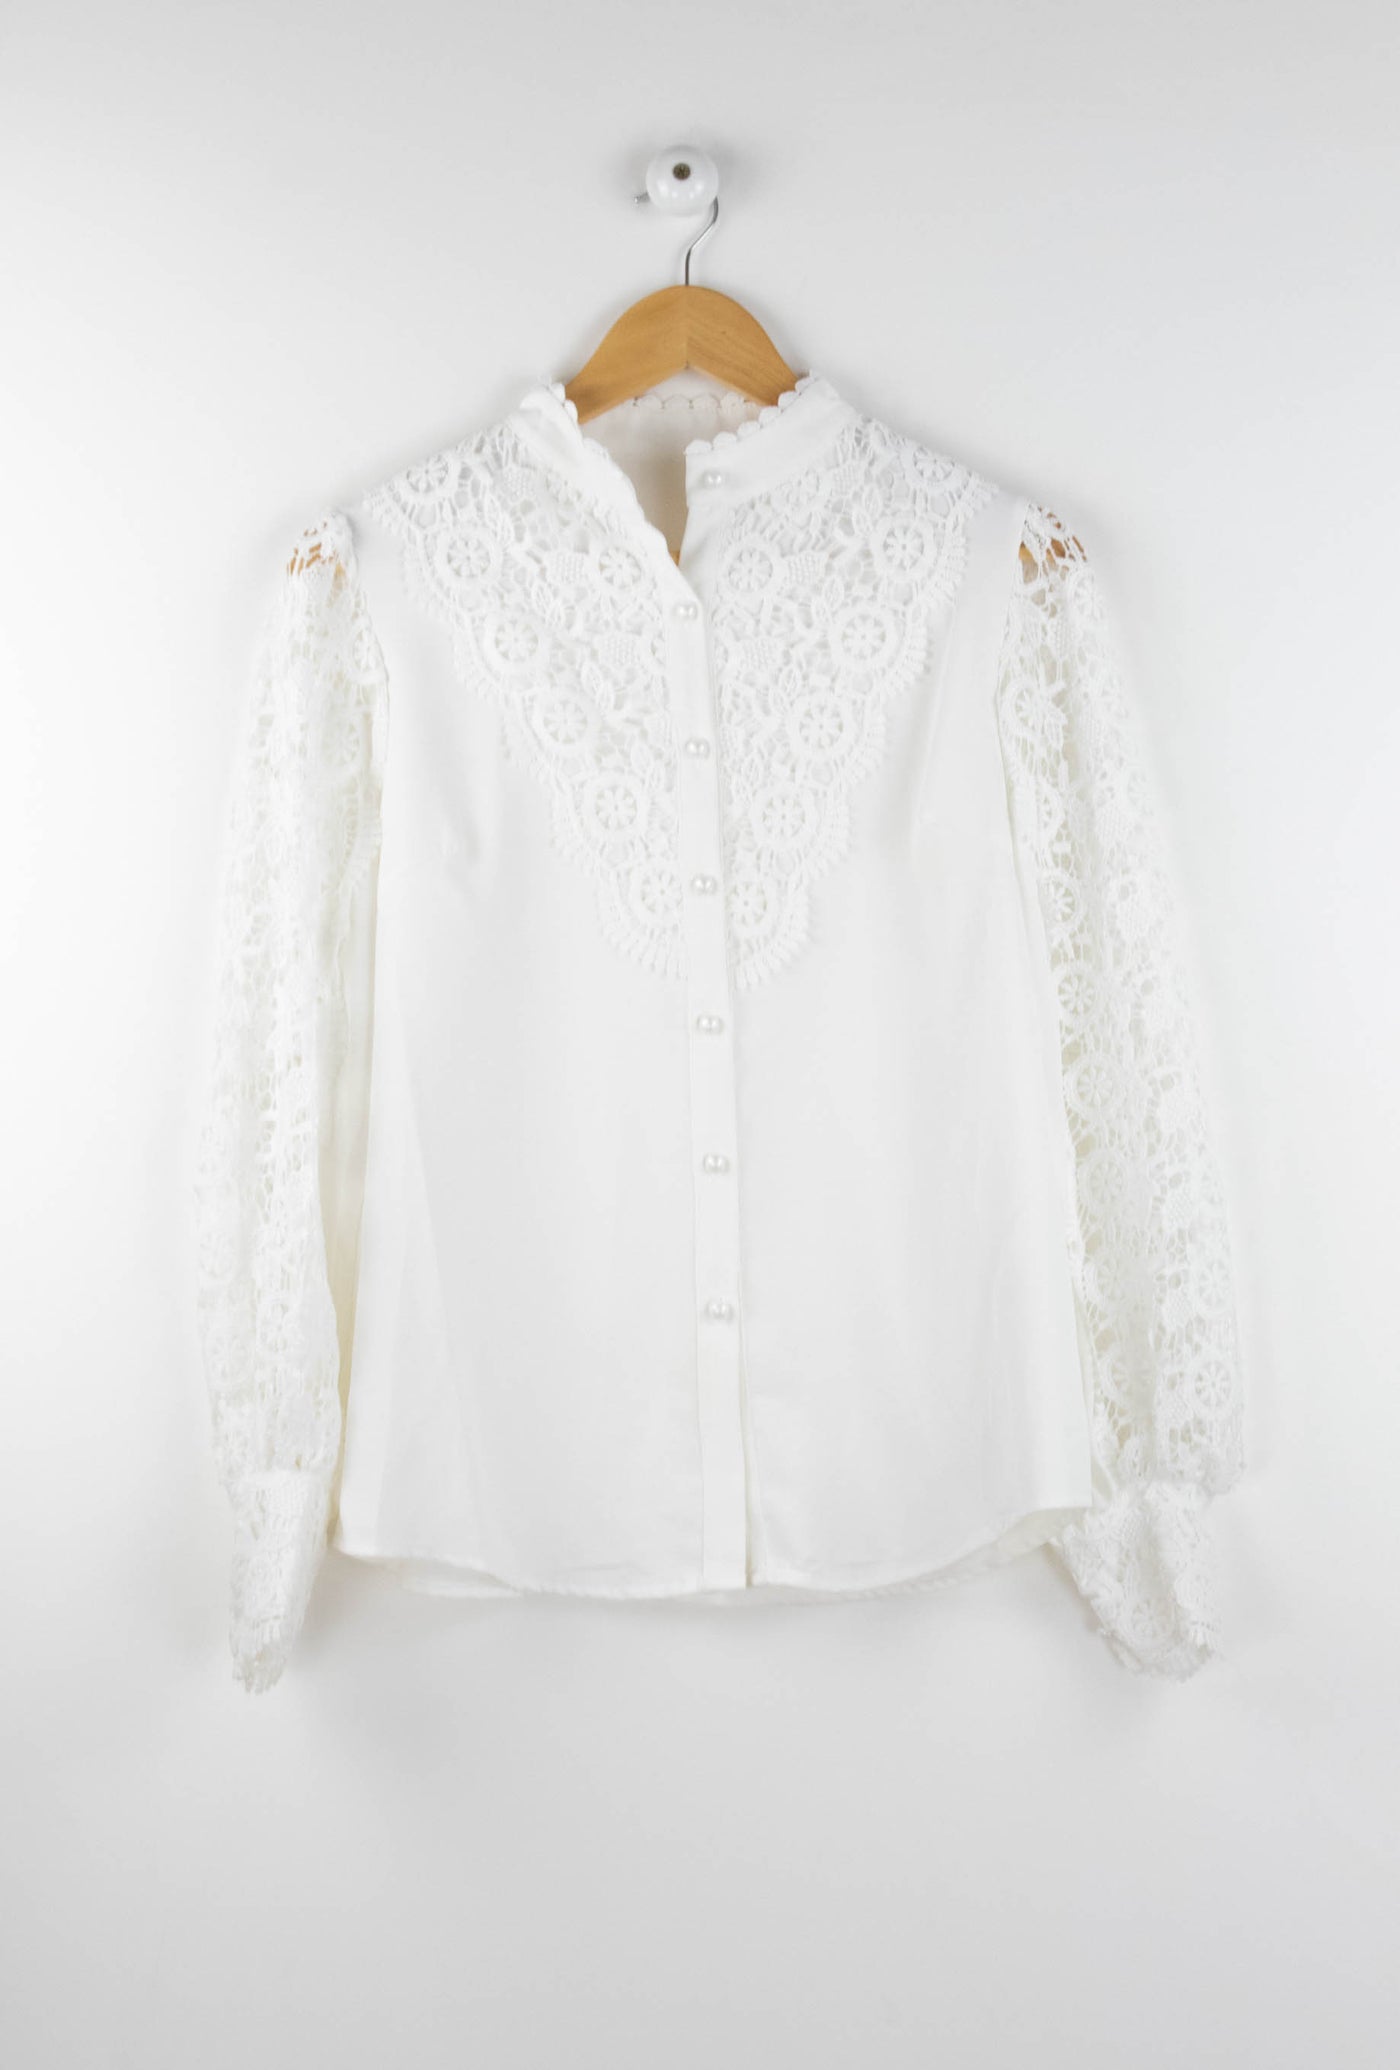 Camisa blanca con detalles de encaje